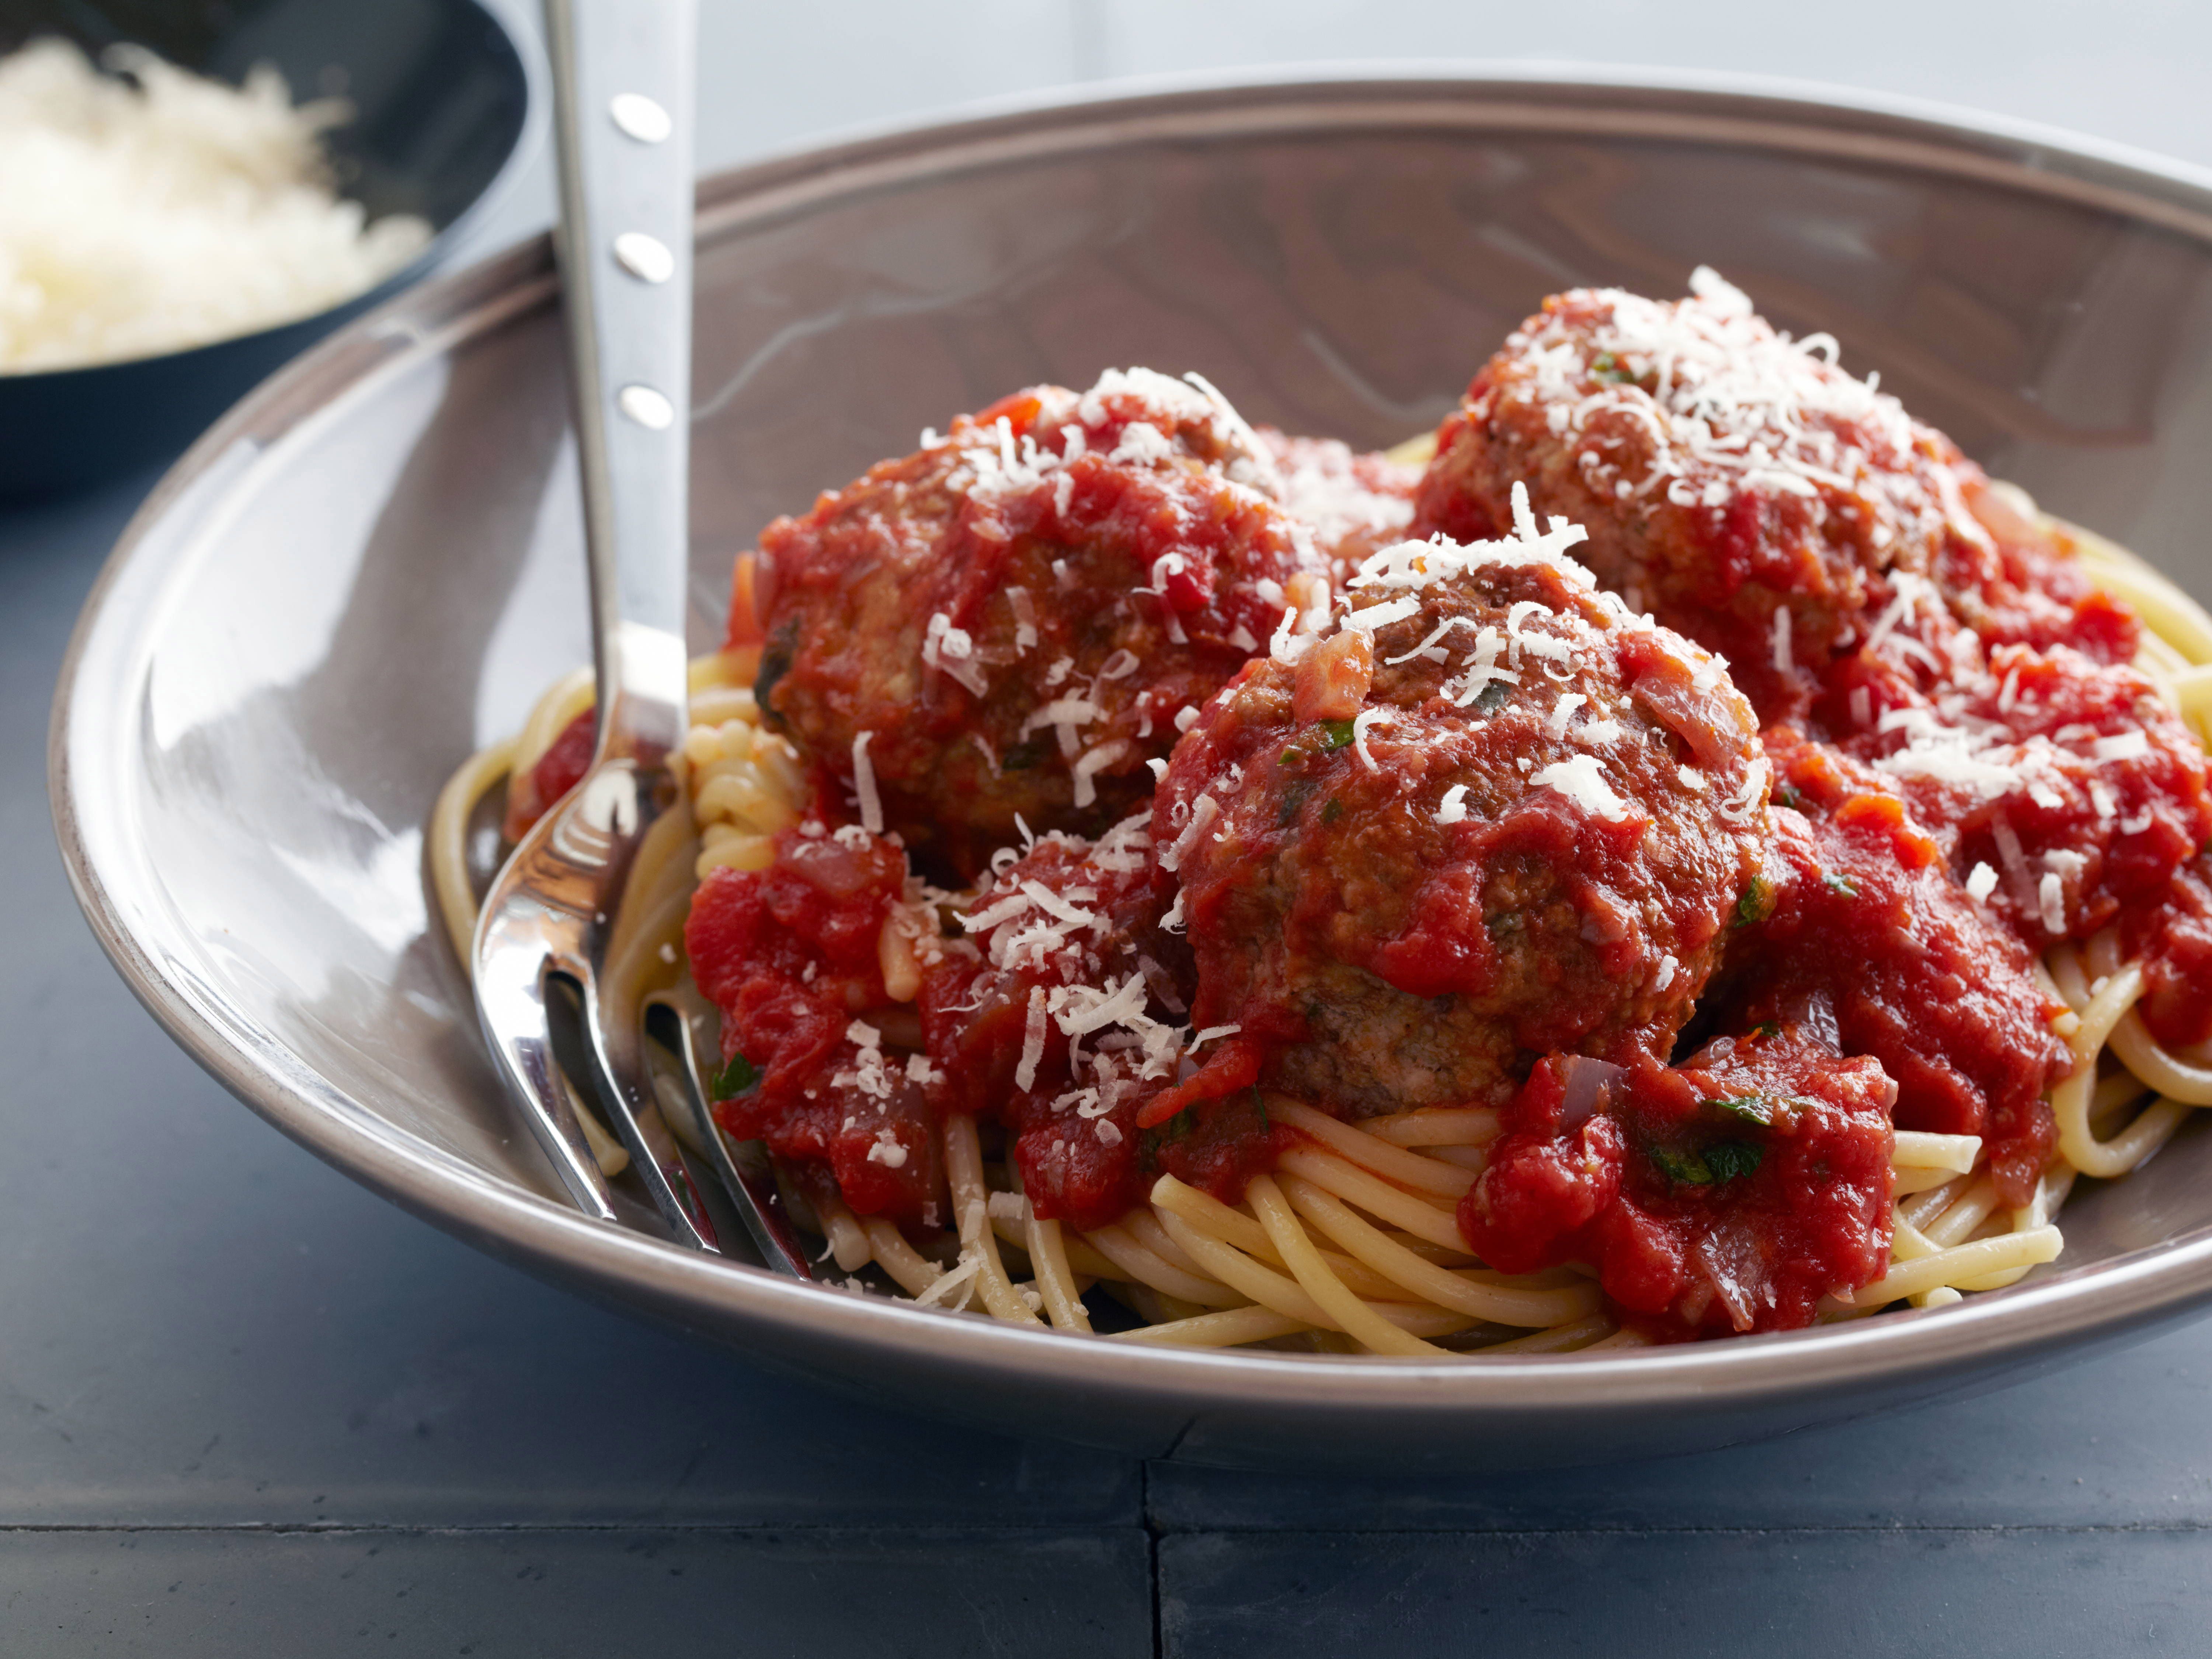 Спагетти с фрикадельками (spaghetti sauce with meatballs)
            самые сочные самые мясные фрикадельки в томатном соусе на вашей тарелке